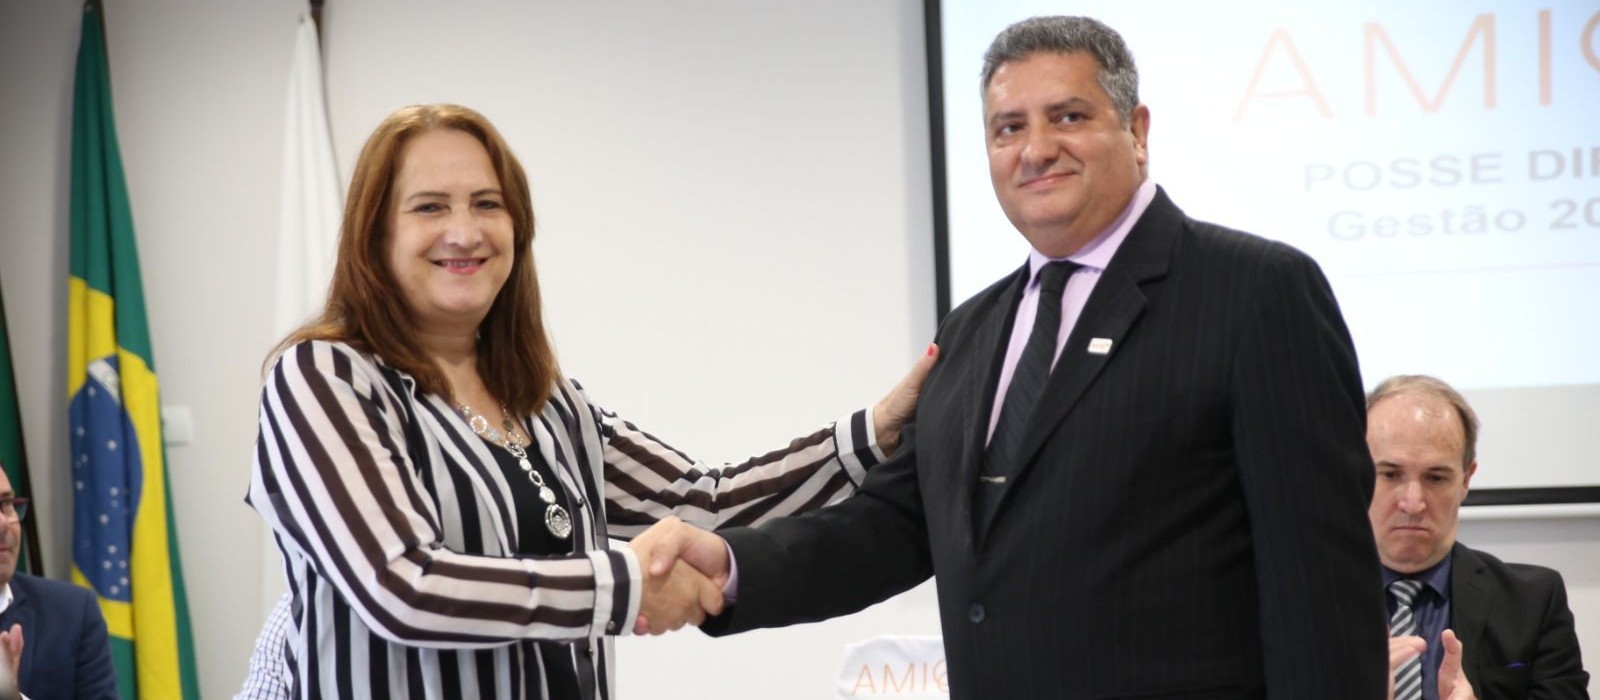 Empresário Jovane Borges é empossado presidente da AMIC PR